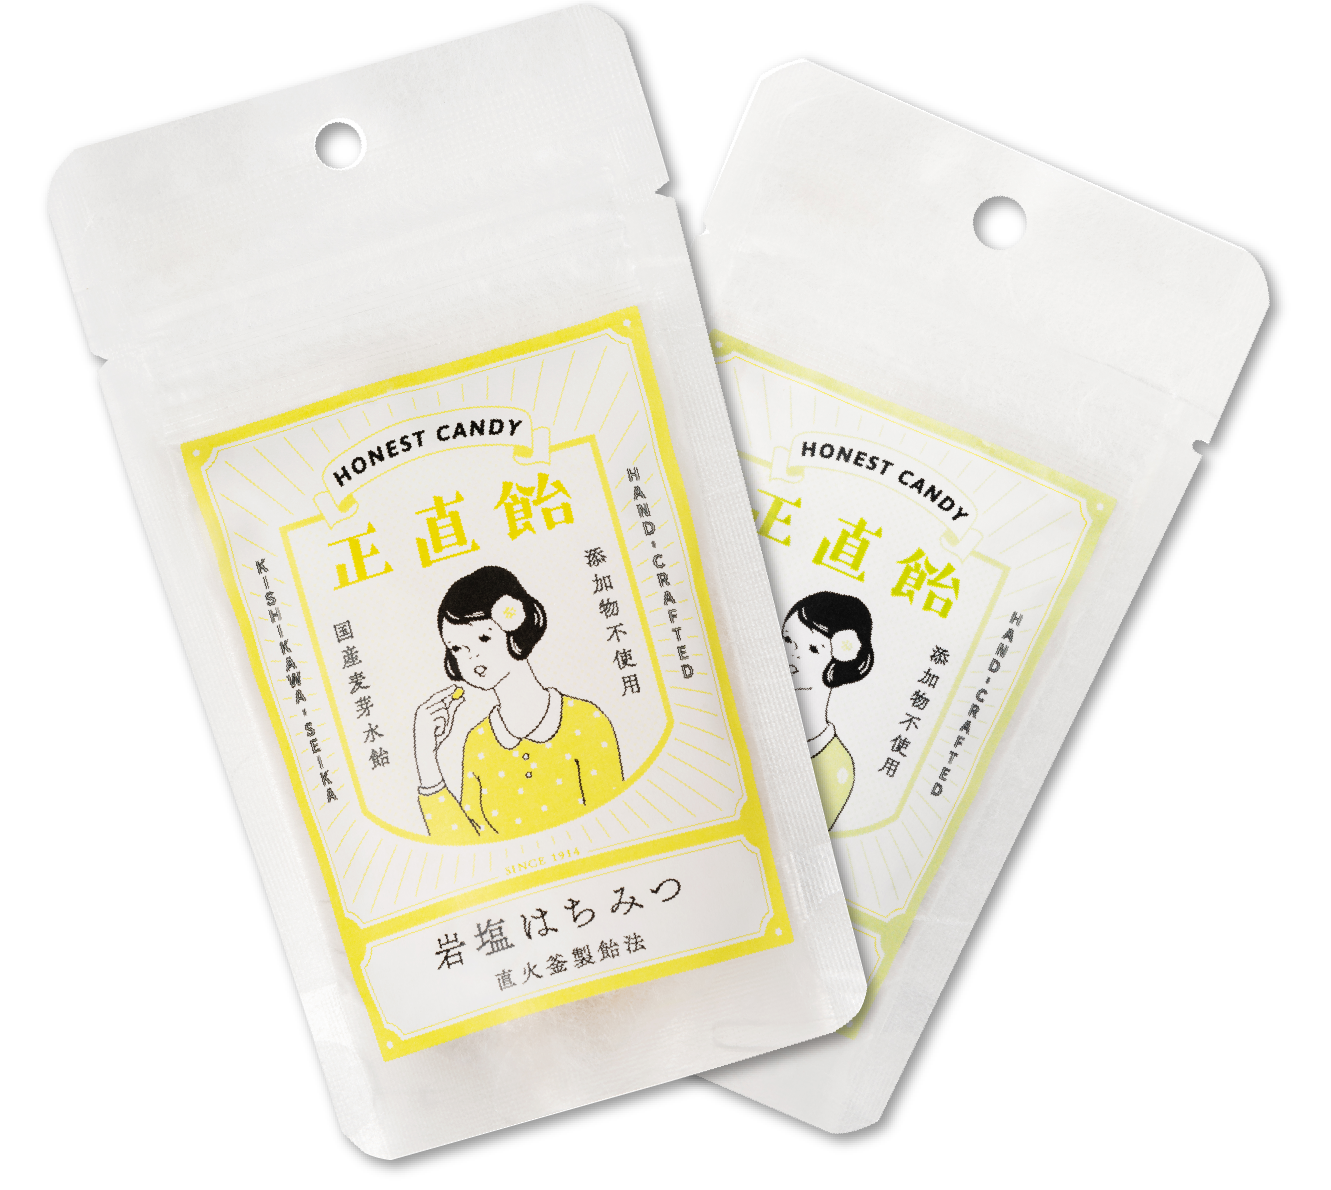 唐津の天然素材を使った製品の販売 Karatsu Style 佐賀 唐津の天然素材を使った化粧品や健康食品の販売